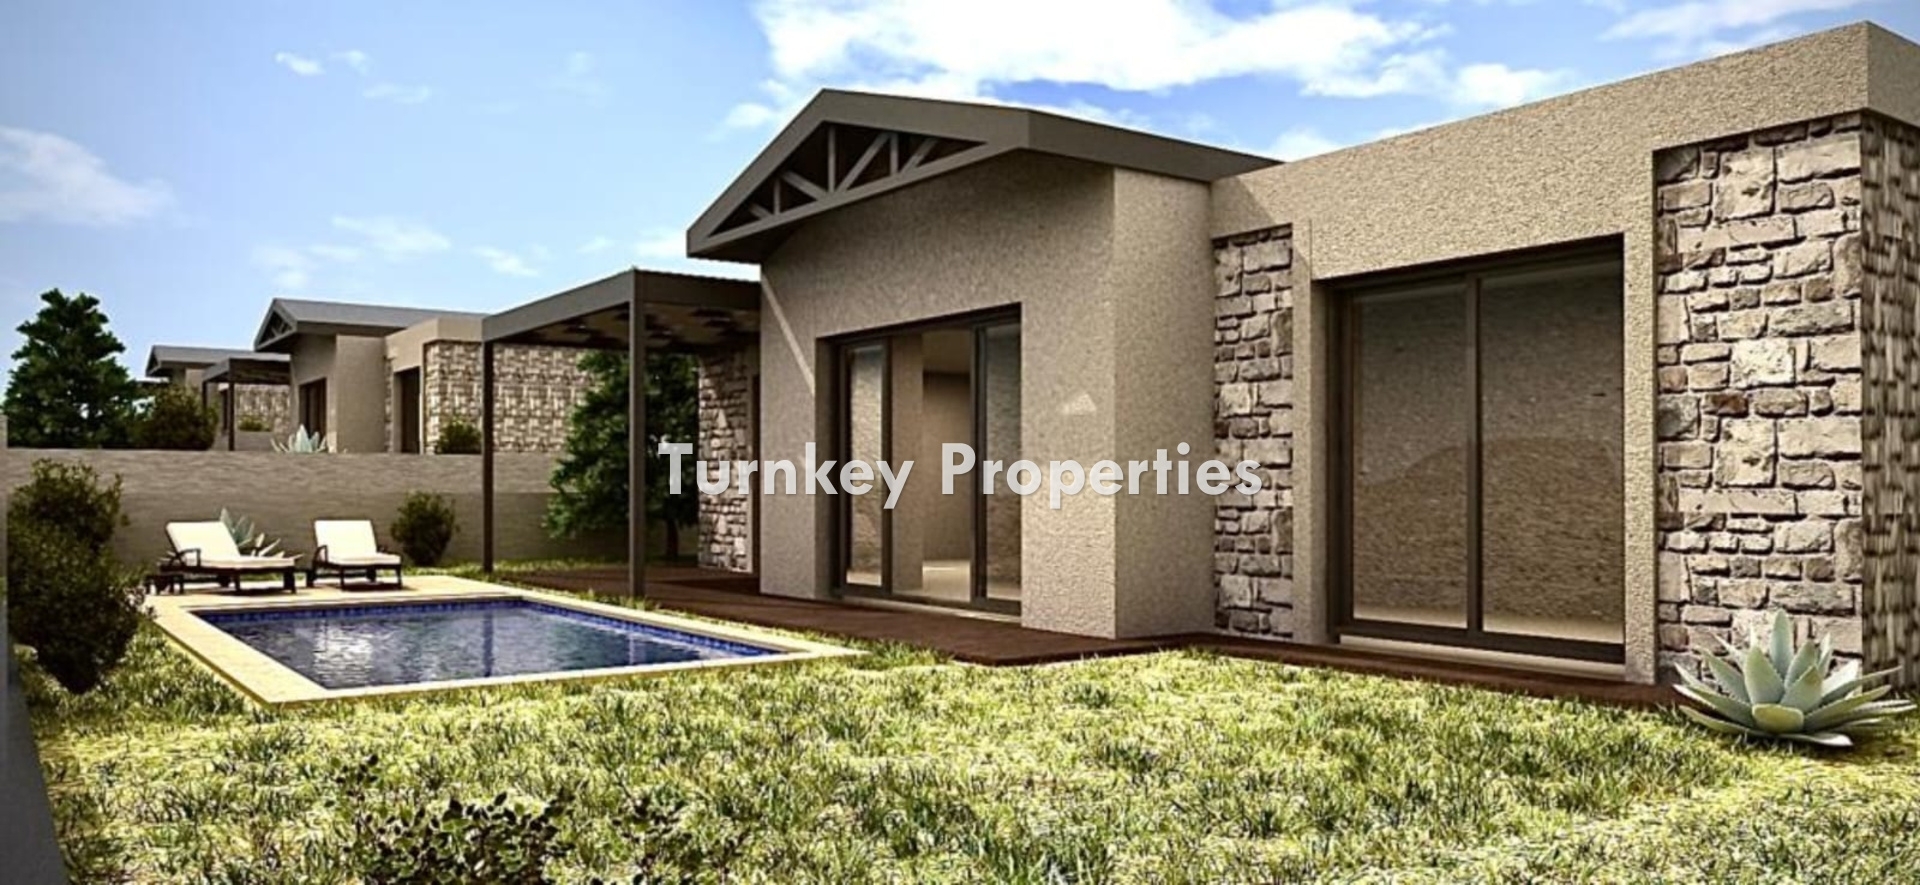 Turnkey Property Bodrum